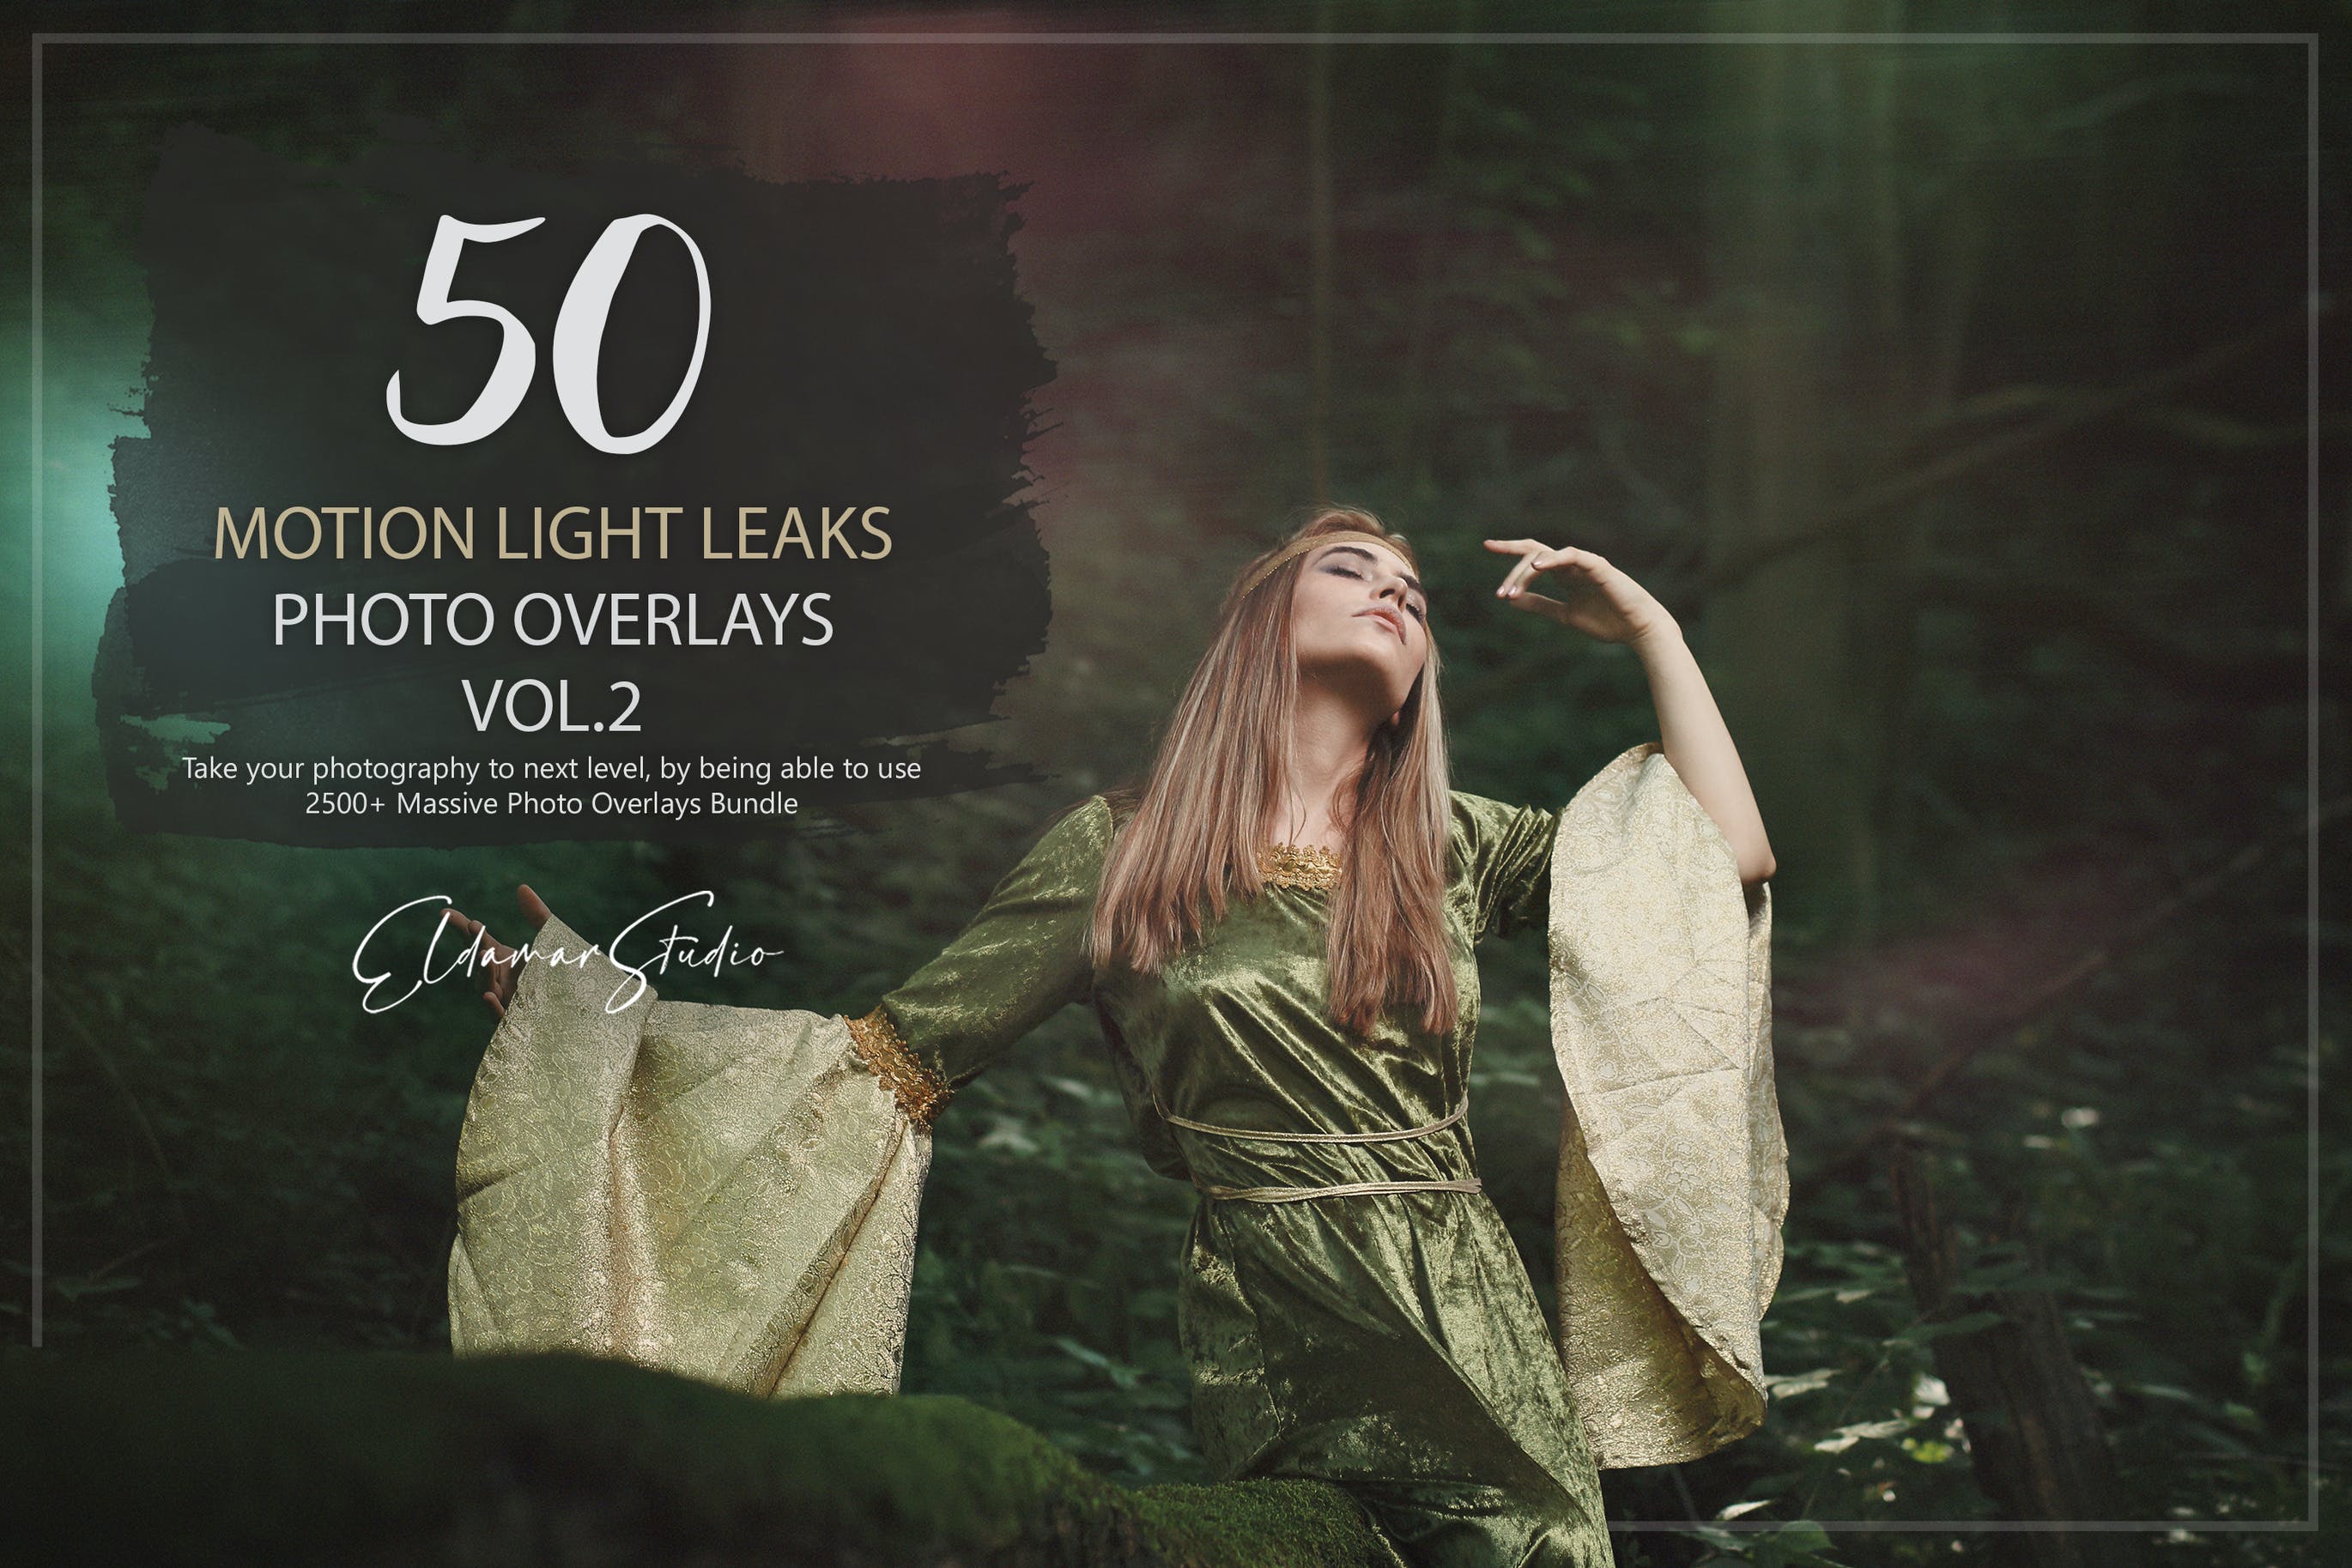 50个彩色漏光照片叠层背景素材v2 50 Motion Light Leaks Photo Overlays – Vol. 2 图片素材 第1张